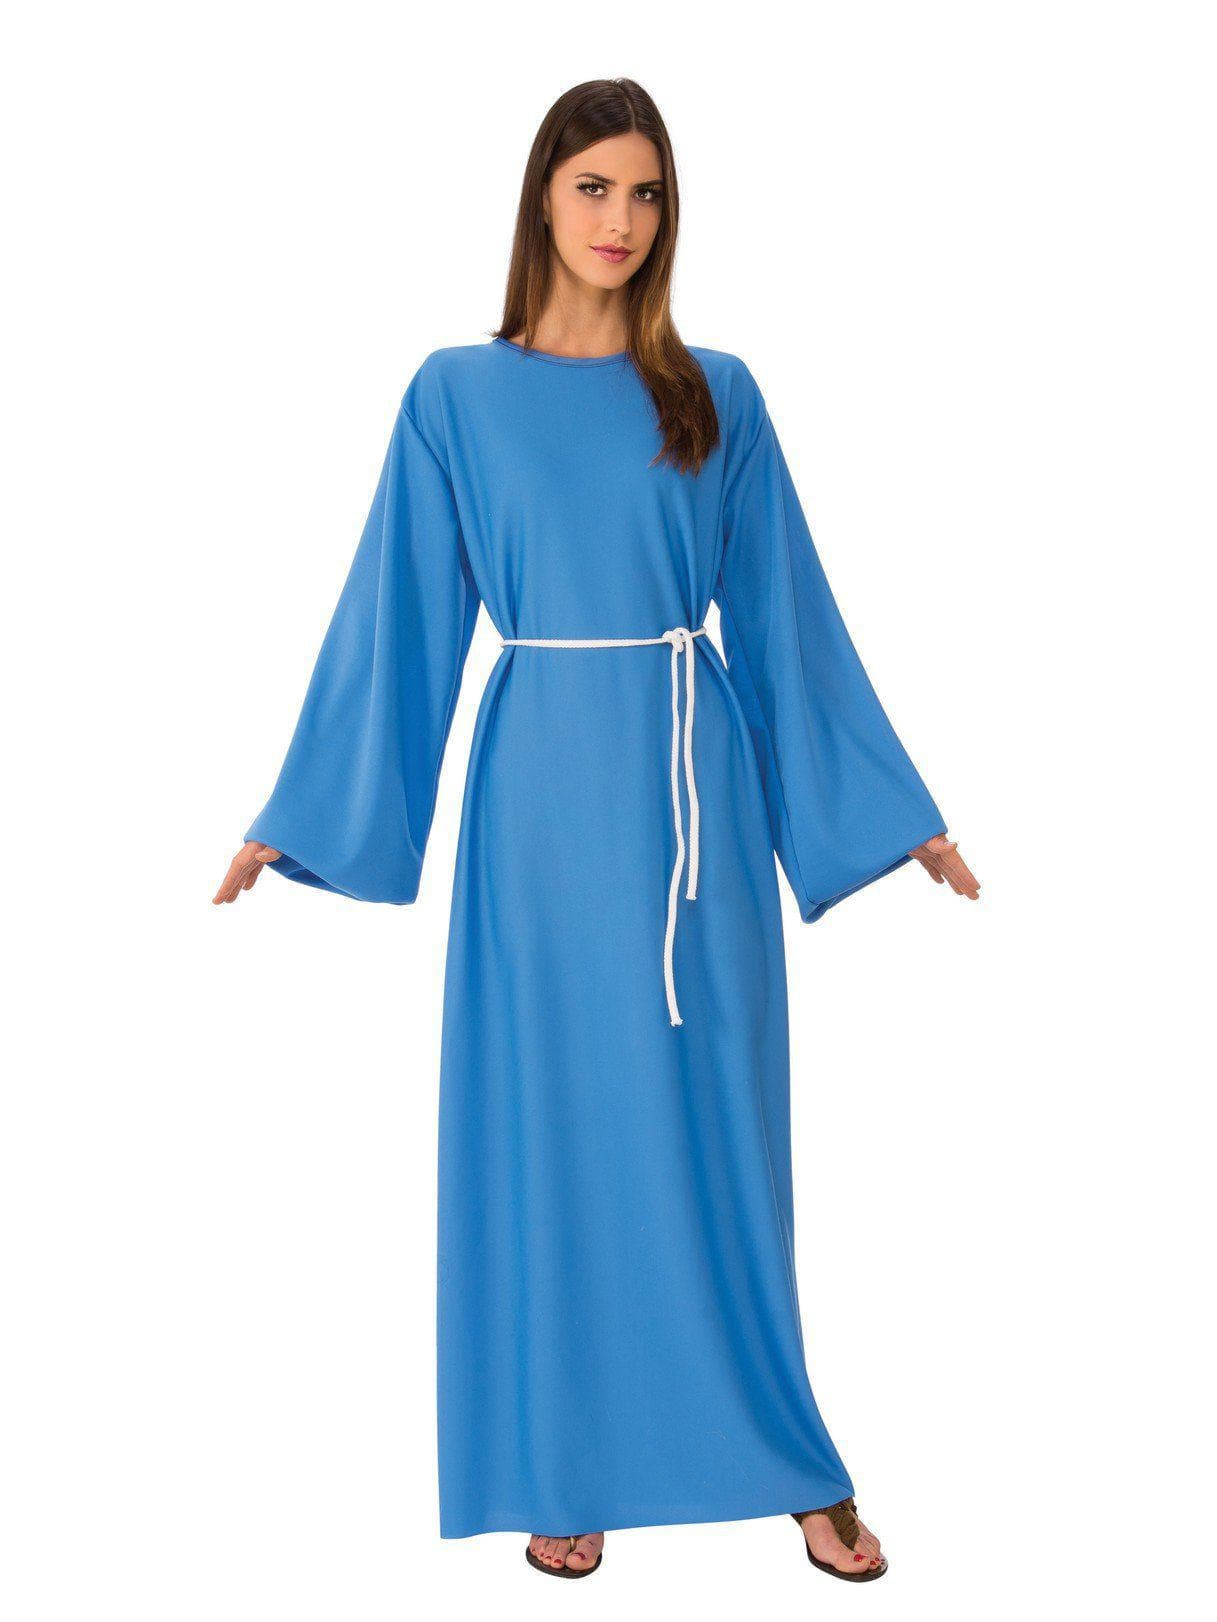 Adult Blue Biblical Robe Costume - costumes.com